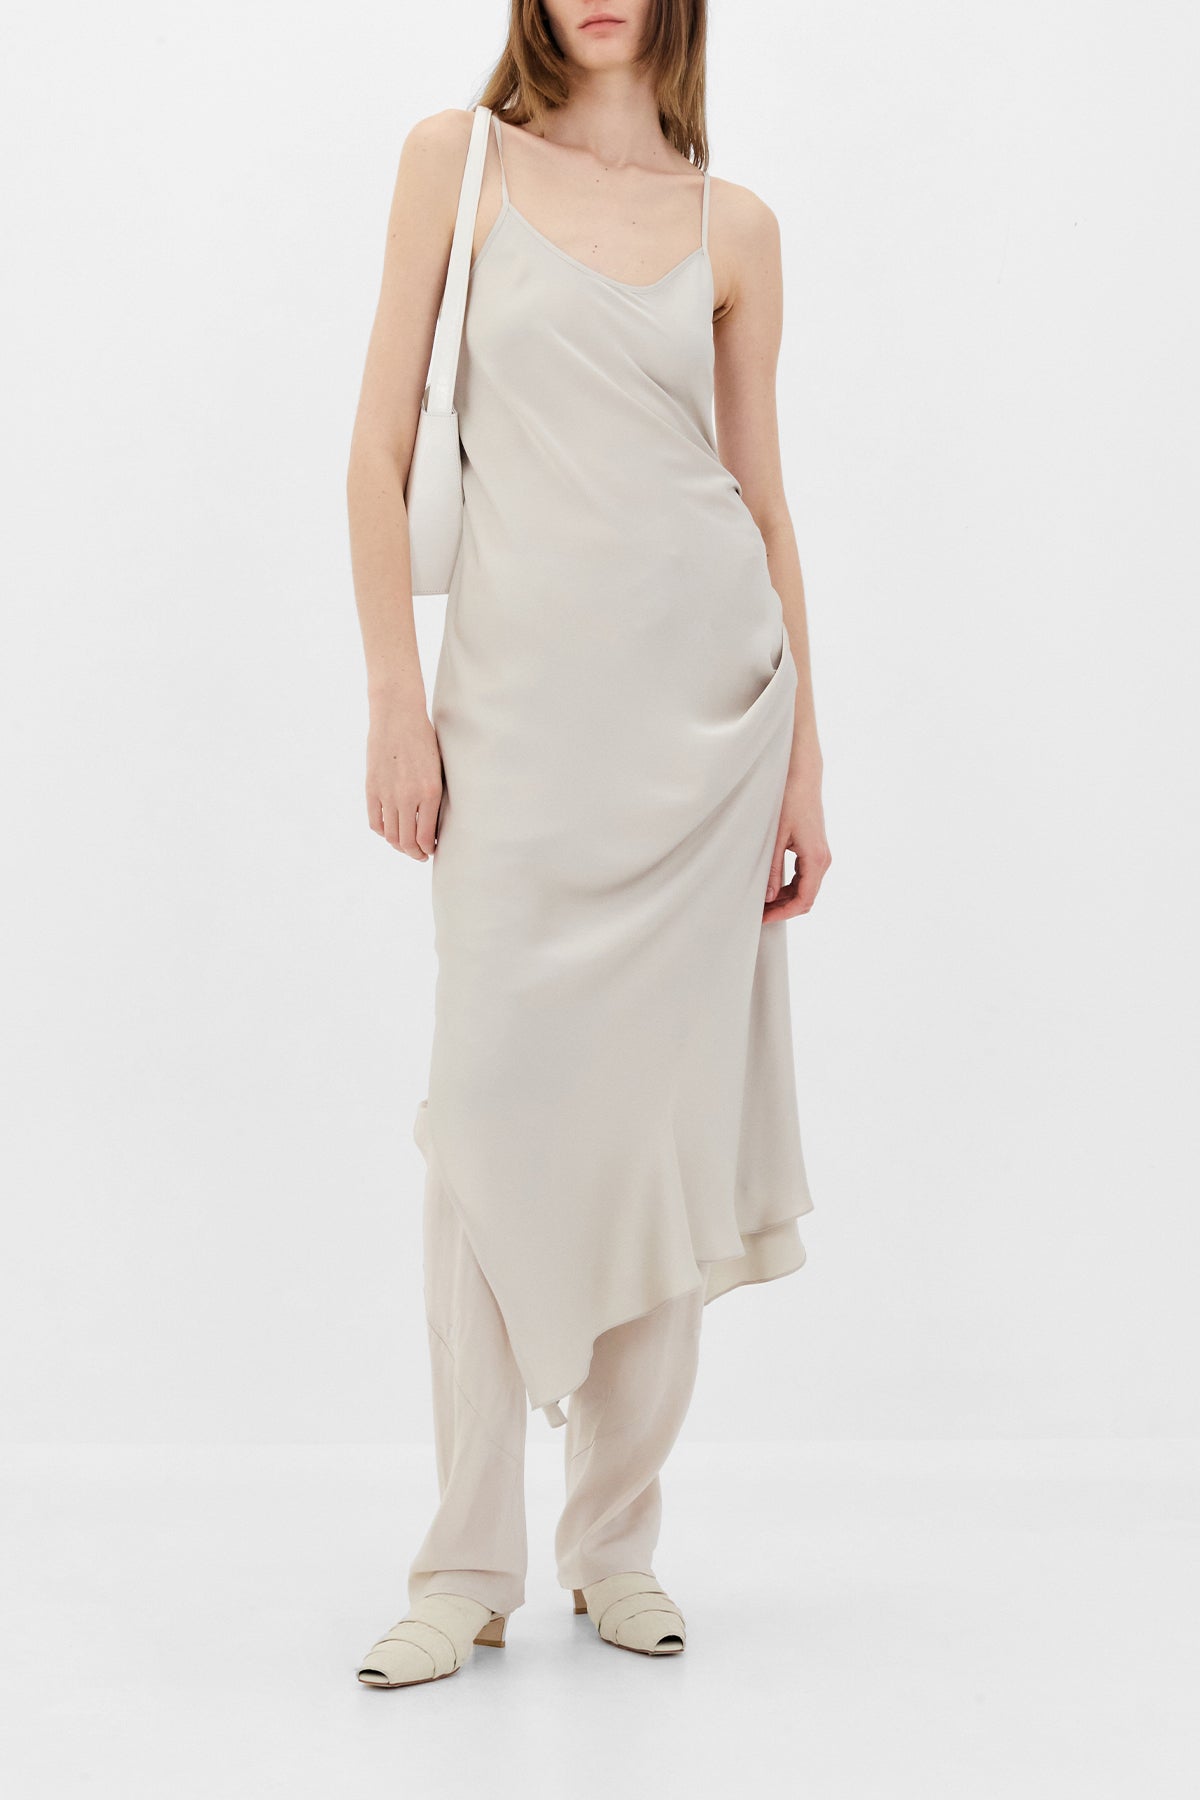 Two-Way Slip Dress in Light Beige by Low Classic